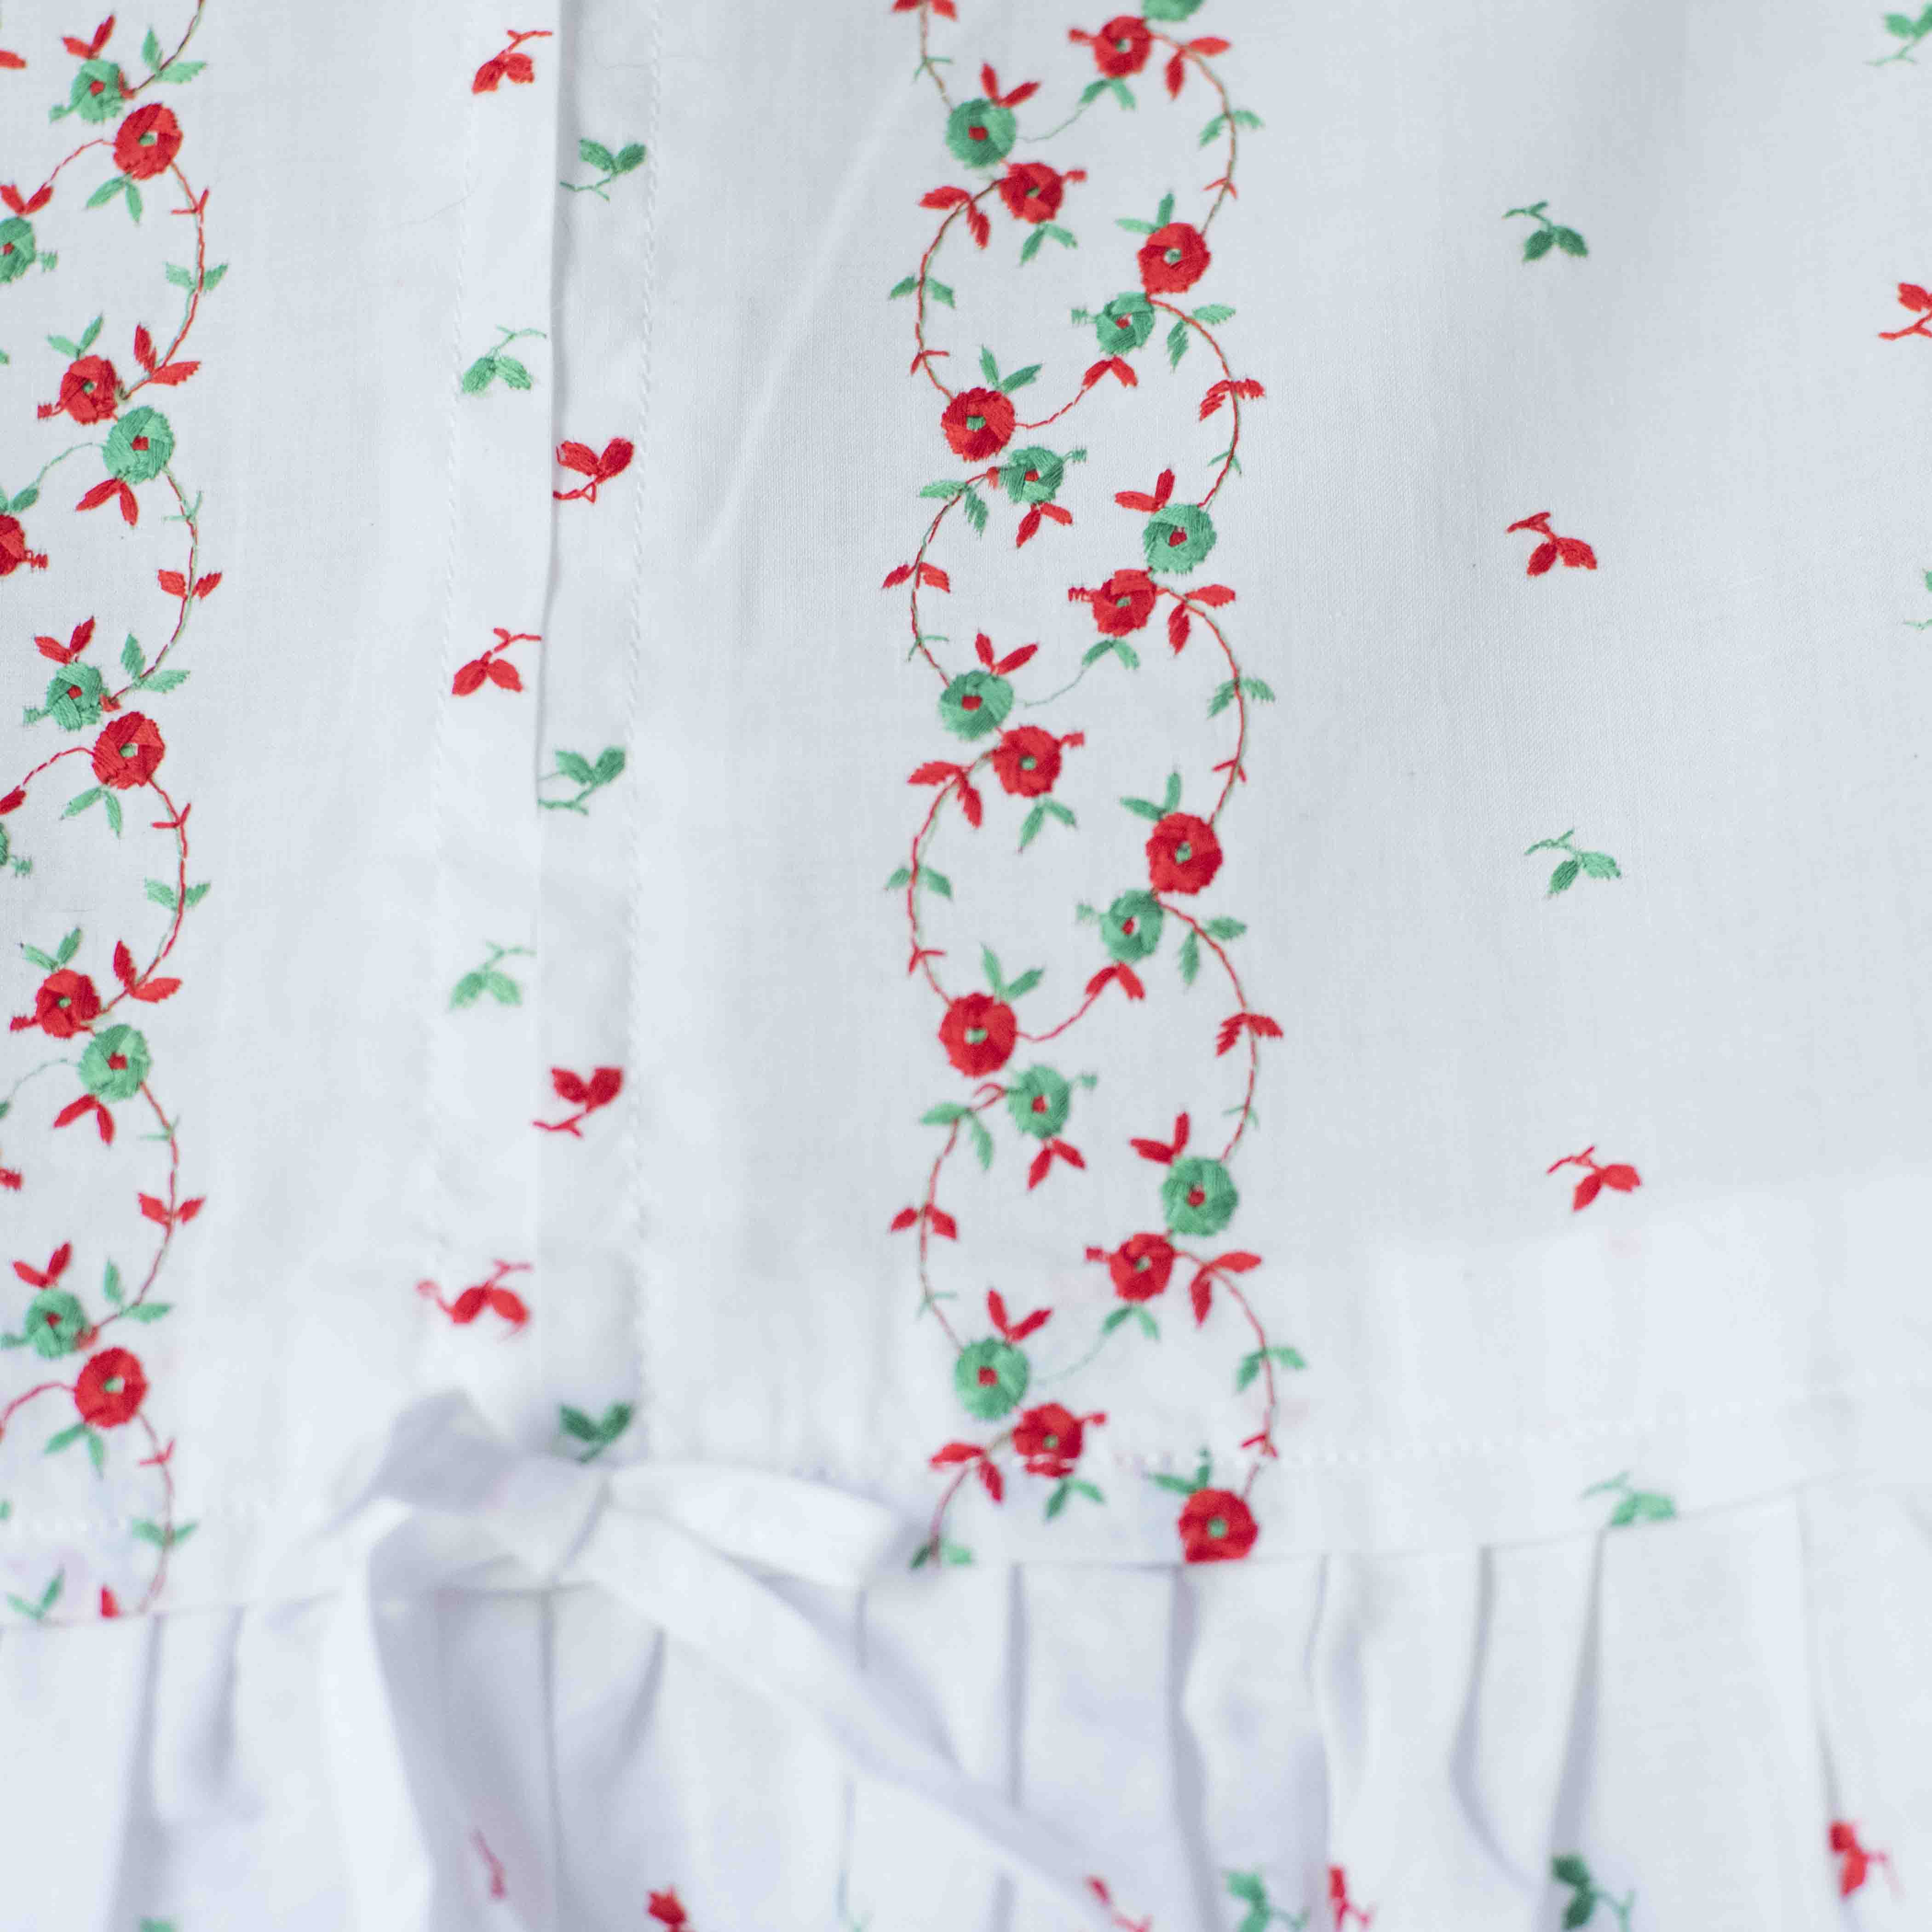 שמלה לבנה מושלמת עם רקמות בירוק ואדום | 18-24 חודשים